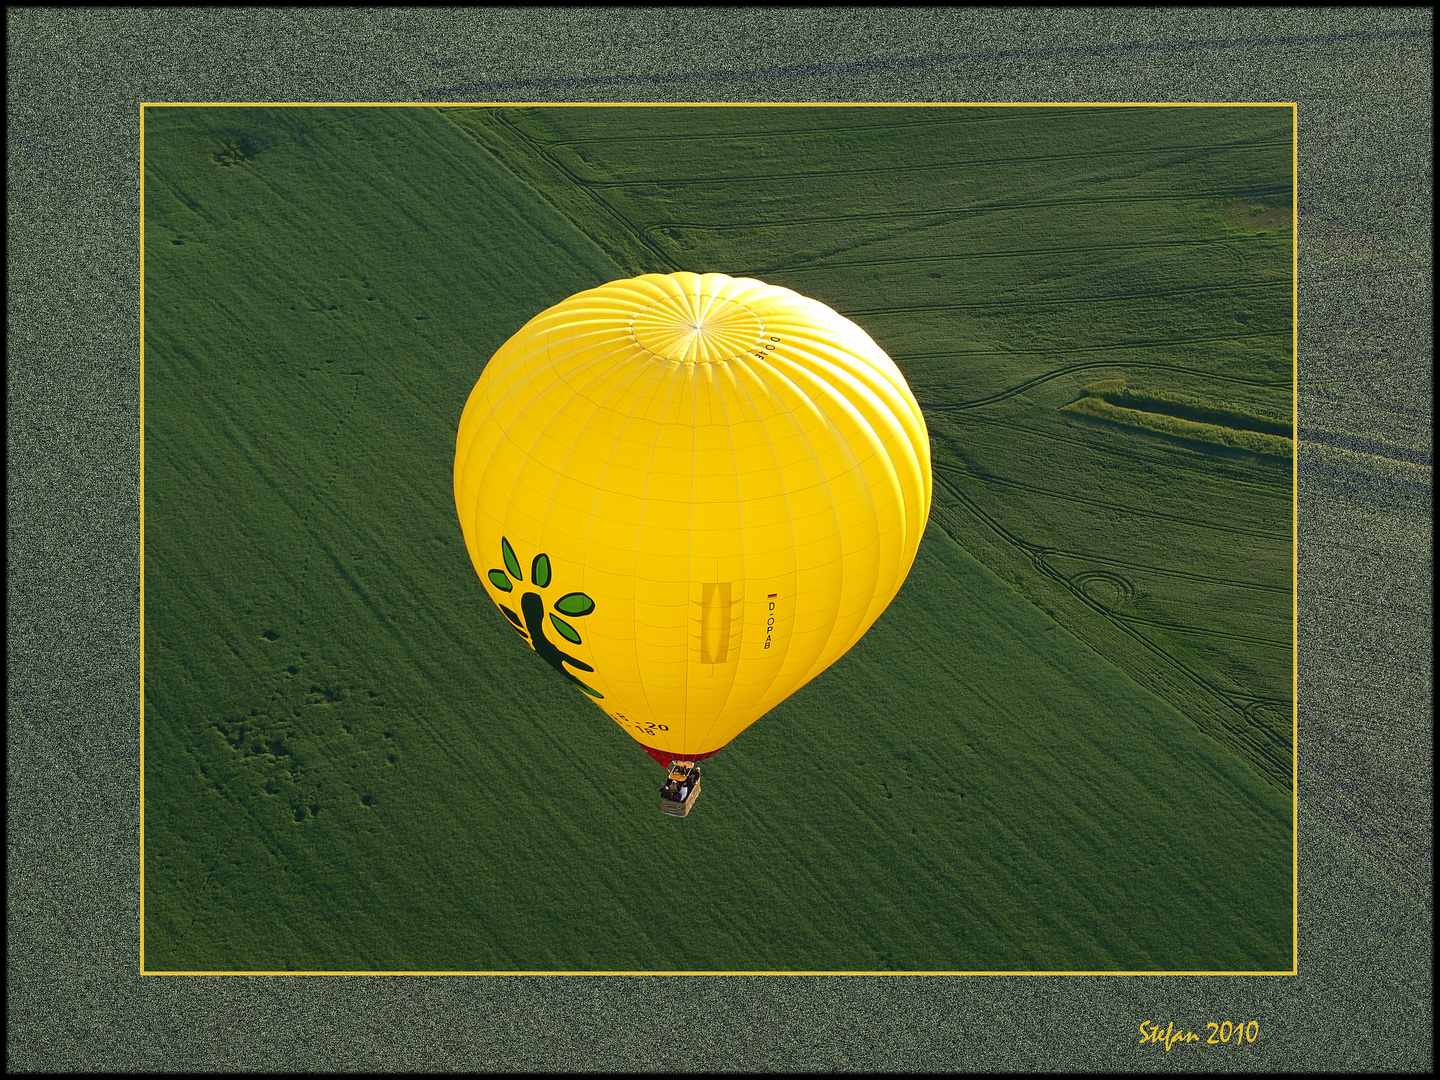 gelber Ballon über grünem Feld